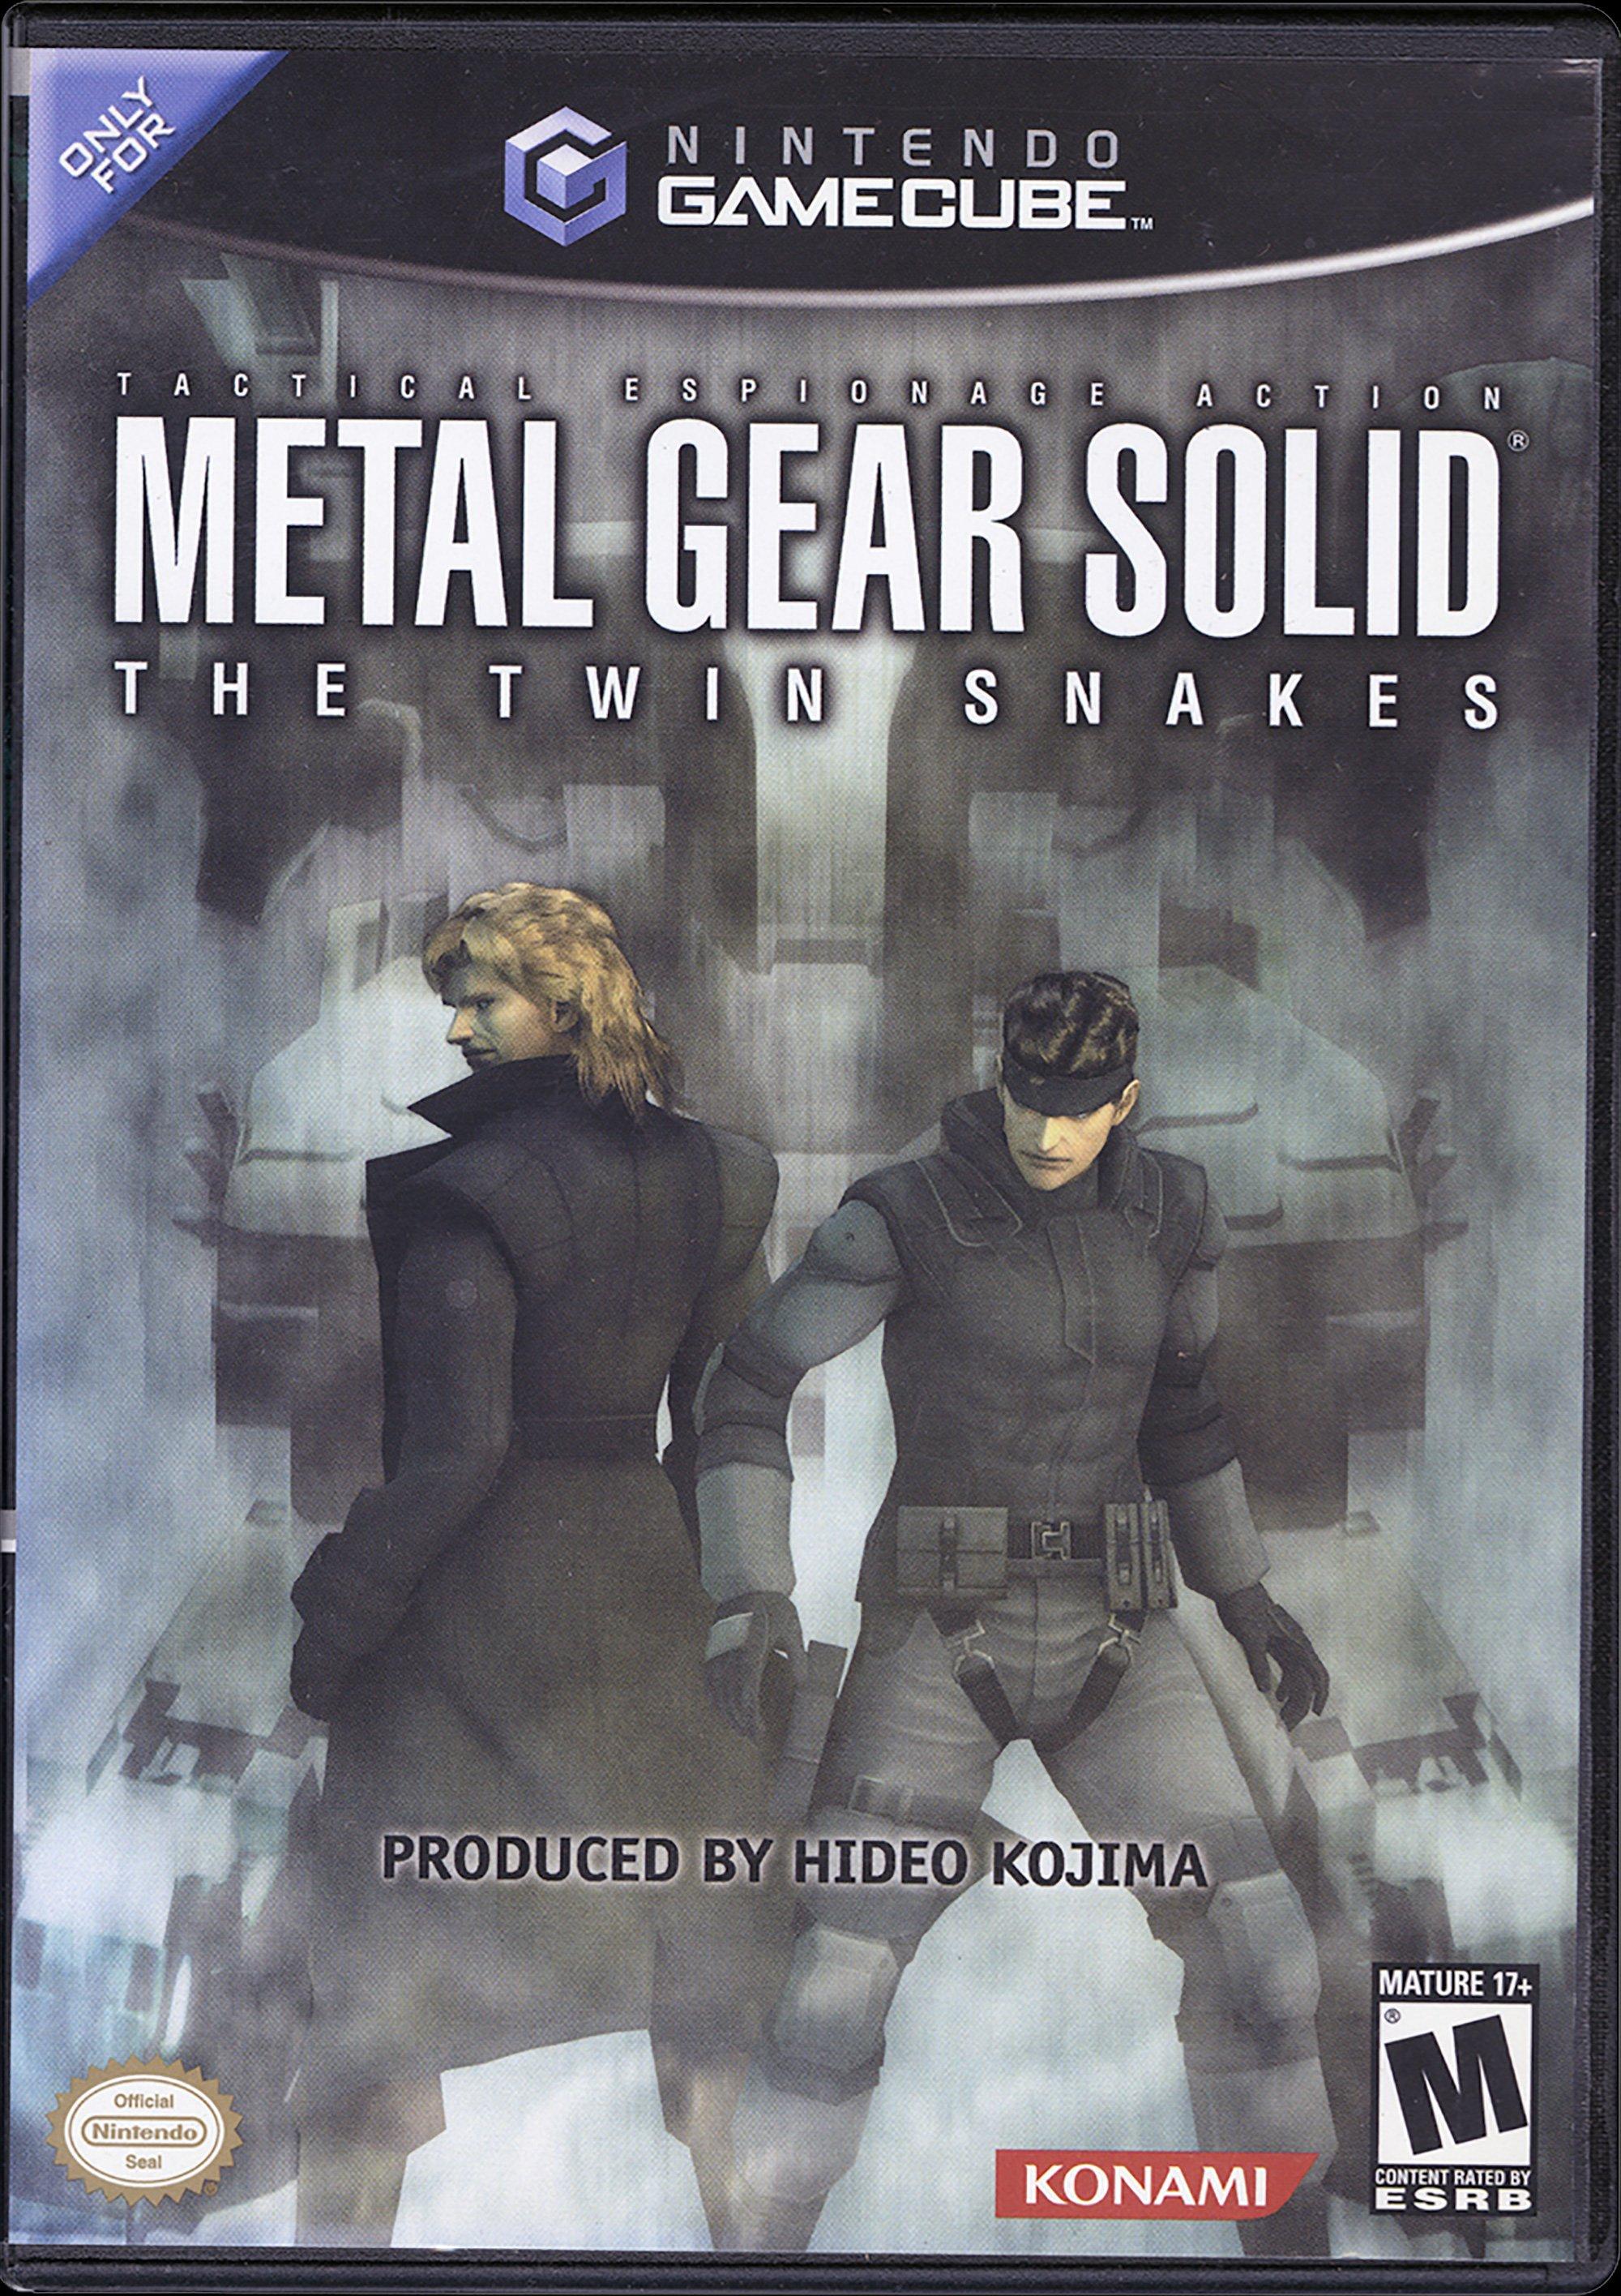 Playstation 1 (PS1) Console Bundle: Metal Gear Solid - Retro vGames